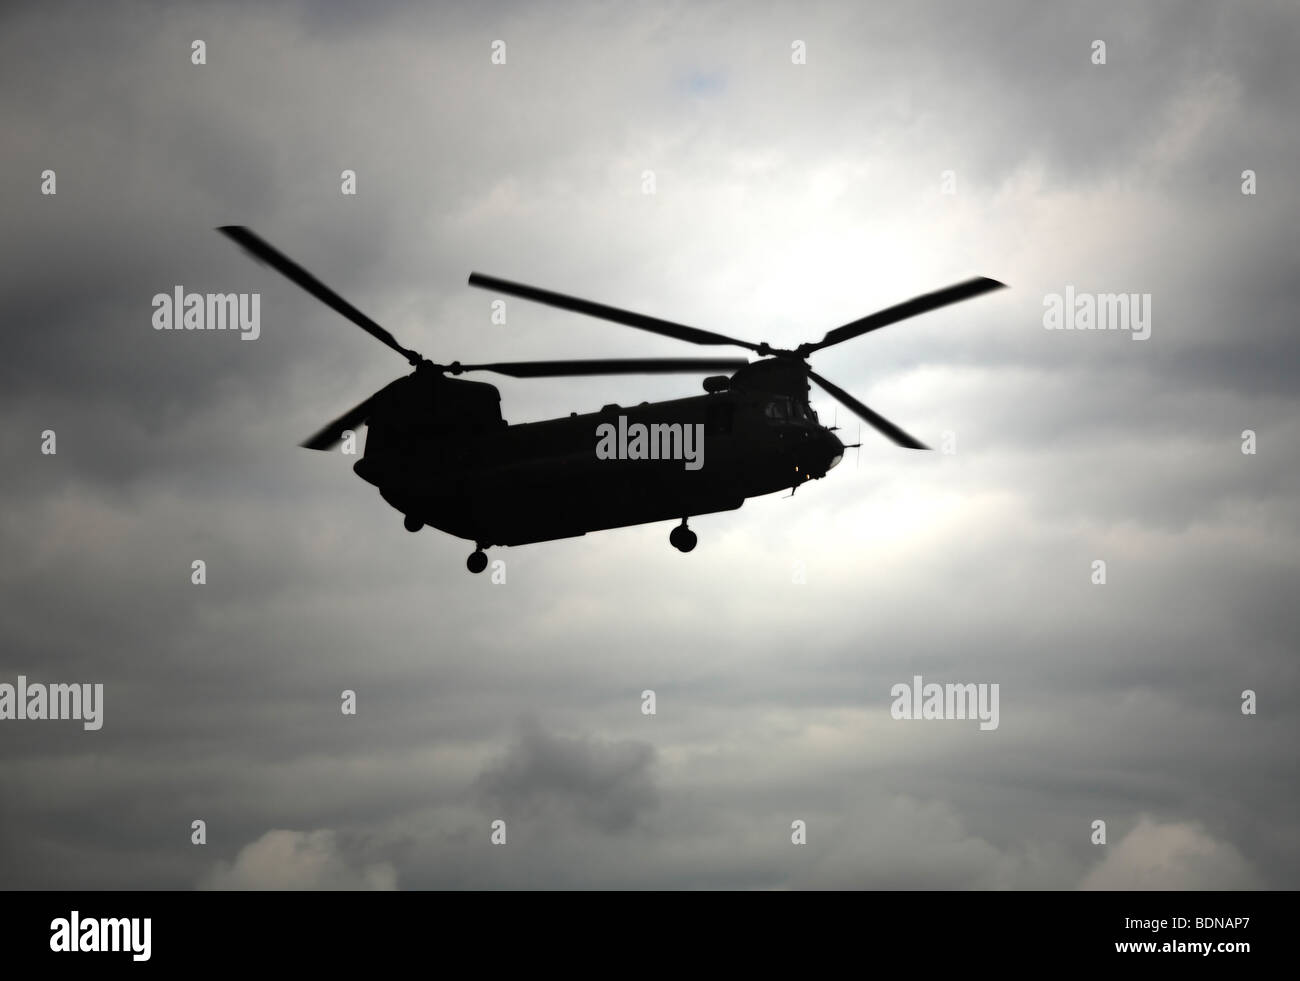 Silhouette d'un hélicoptère Chinook, contre un ciel menaçant. Banque D'Images